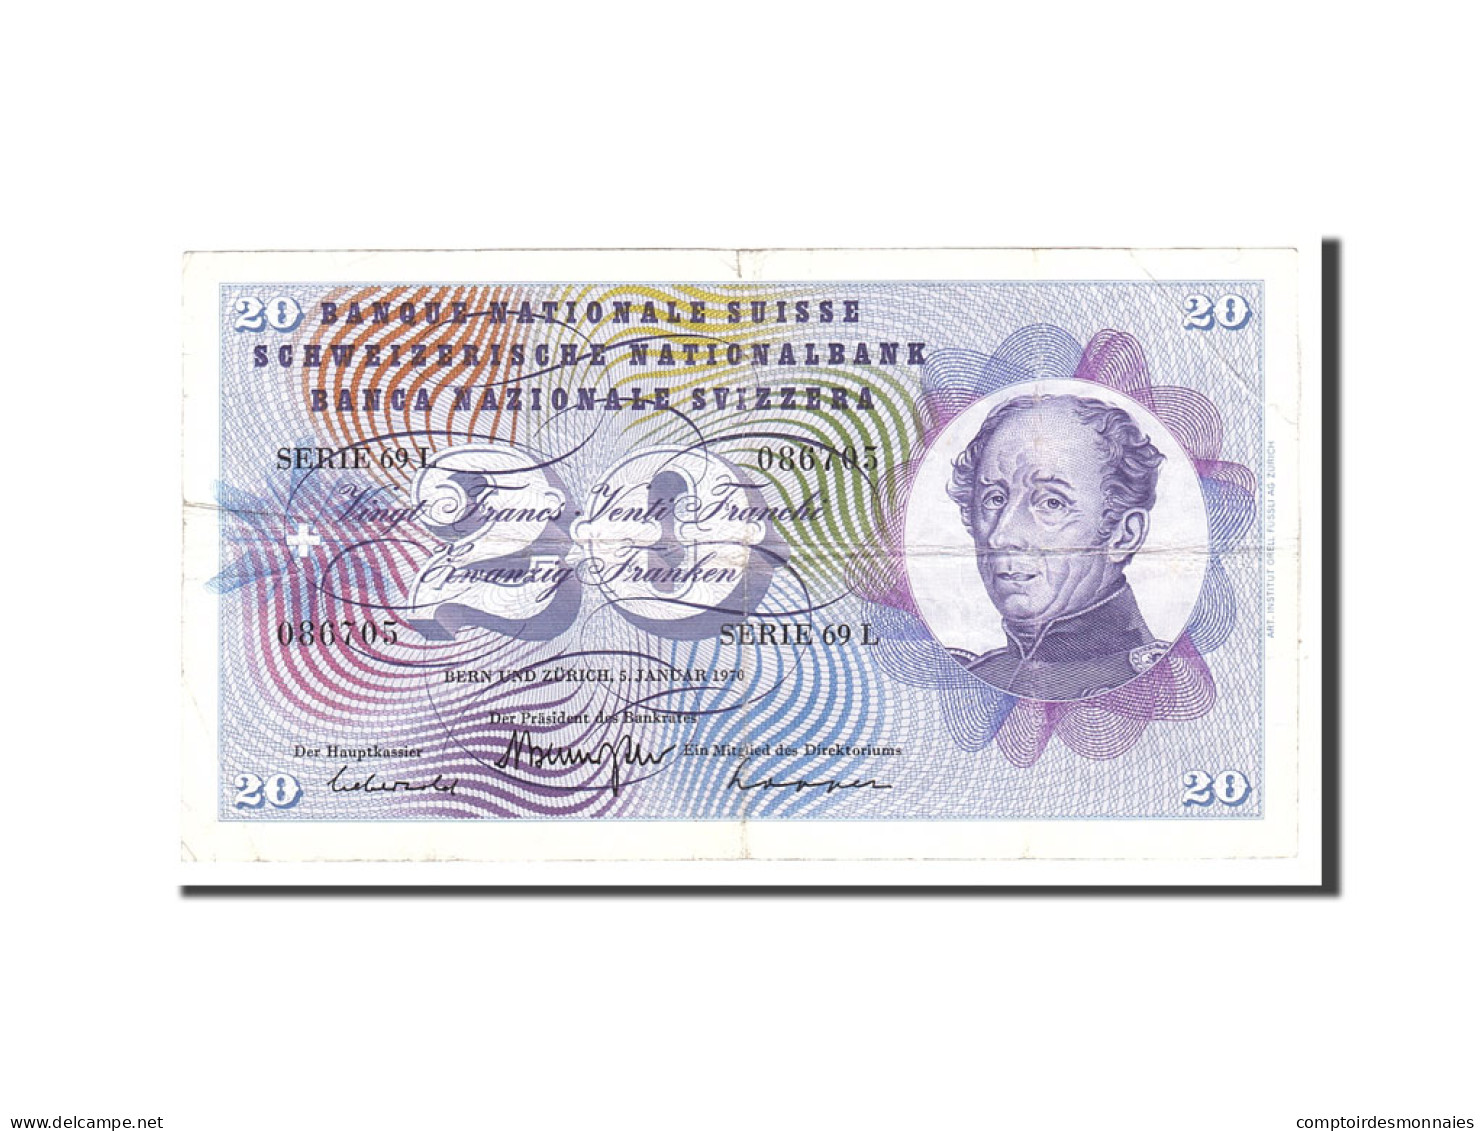 Billet, Suisse, 20 Franken, 1970, 1970-01-05, KM:46r, TTB - Schweiz